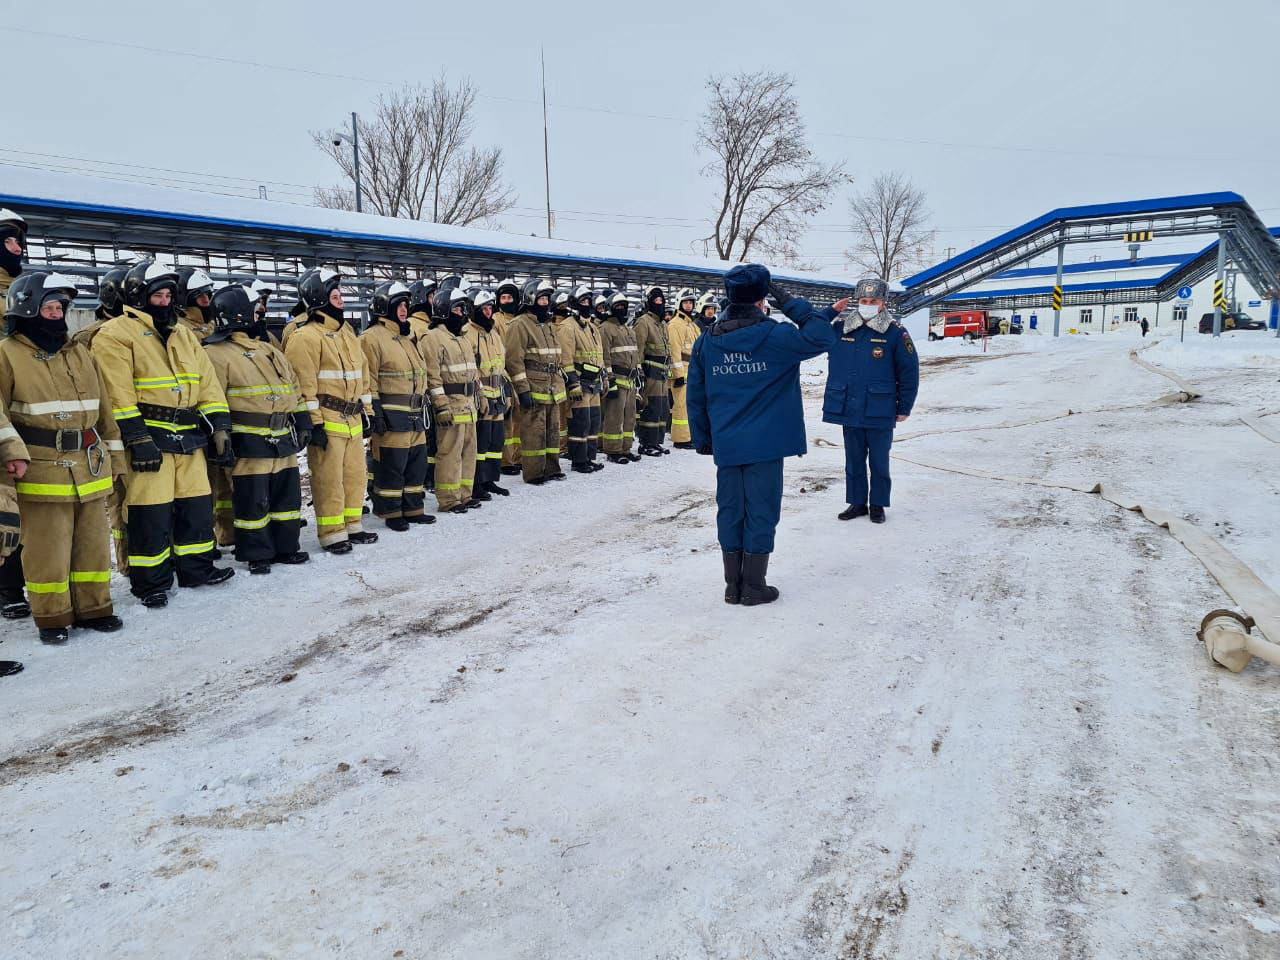 АО «Транснефть – Прикамье» провело пожарно-тактические учения в Альметьевском районе Республики Татарстан